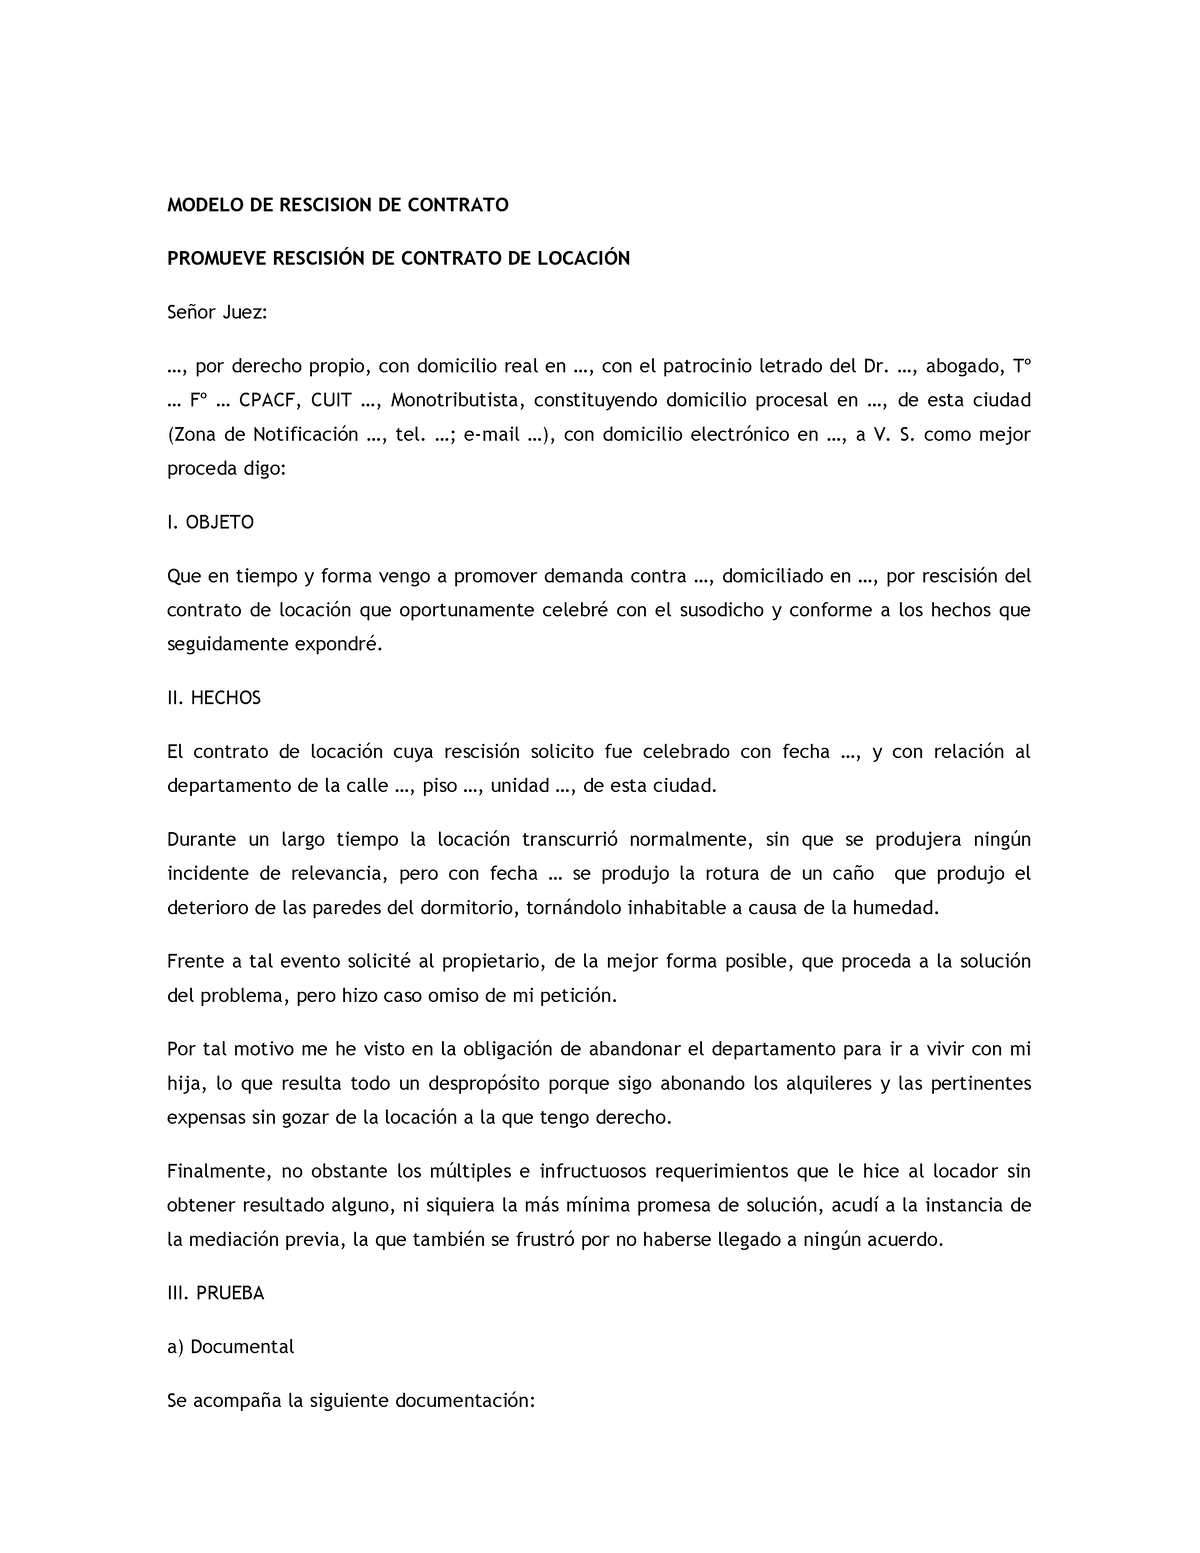 Modelo De Rescision De Contrato Modelo De Rescision De Contrato Promueve RescisiÓn De Contrato 0153